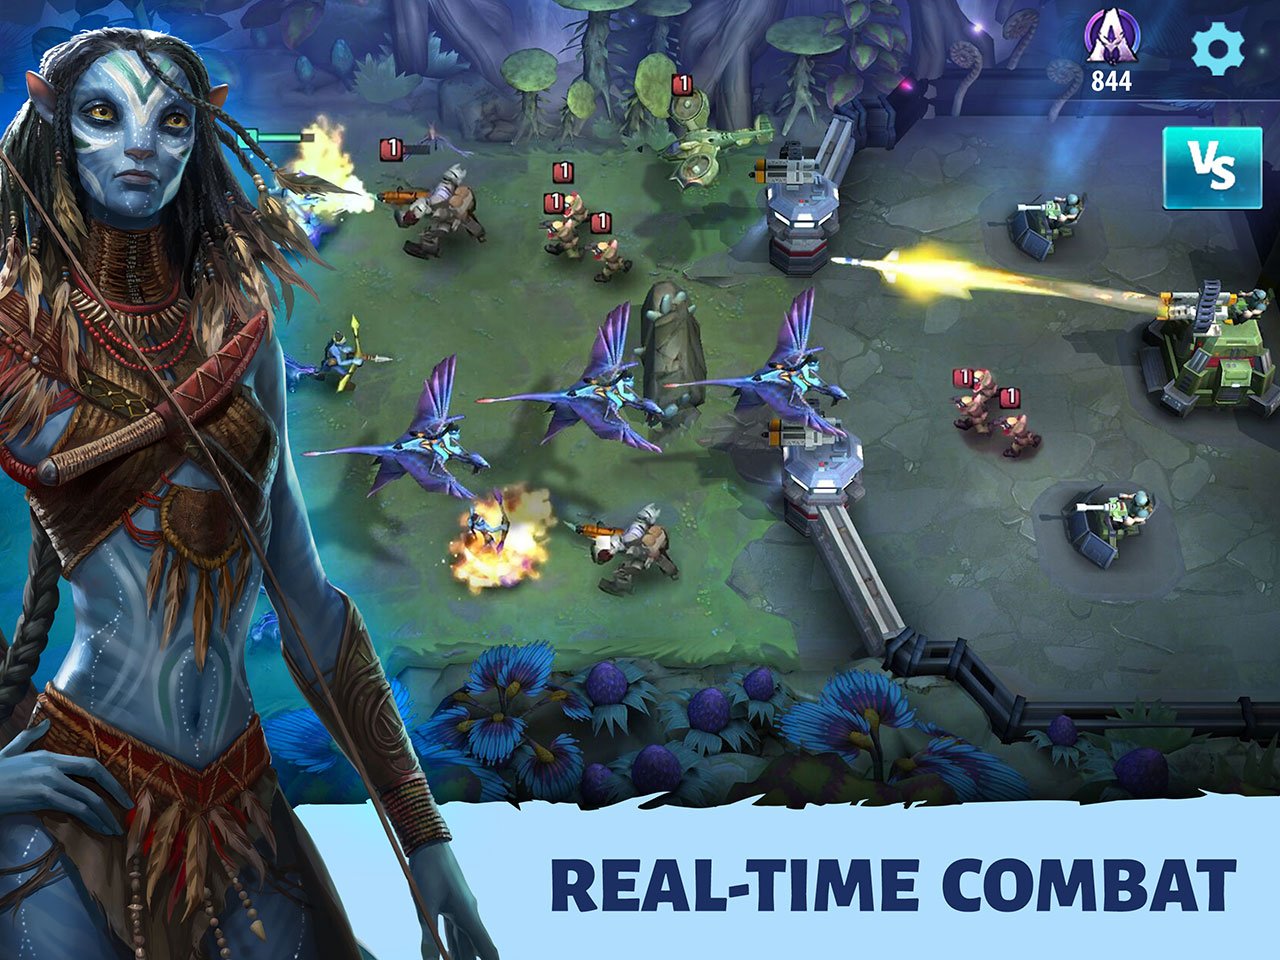 Upcoming Avatar Mobile Game – Đây sẽ là một siêu phẩm game Avatar mới nhất sắp được ra mắt trong năm nay, với đồ họa tuyệt đẹp và lối chơi chiến thuật hấp dẫn. Bạn sẽ là nhân vật chính của cuộc phiêu lưu đầy gian nan và thử thách mới mẻ. Hãy trở thành người đầu tiên trải nghiệm!